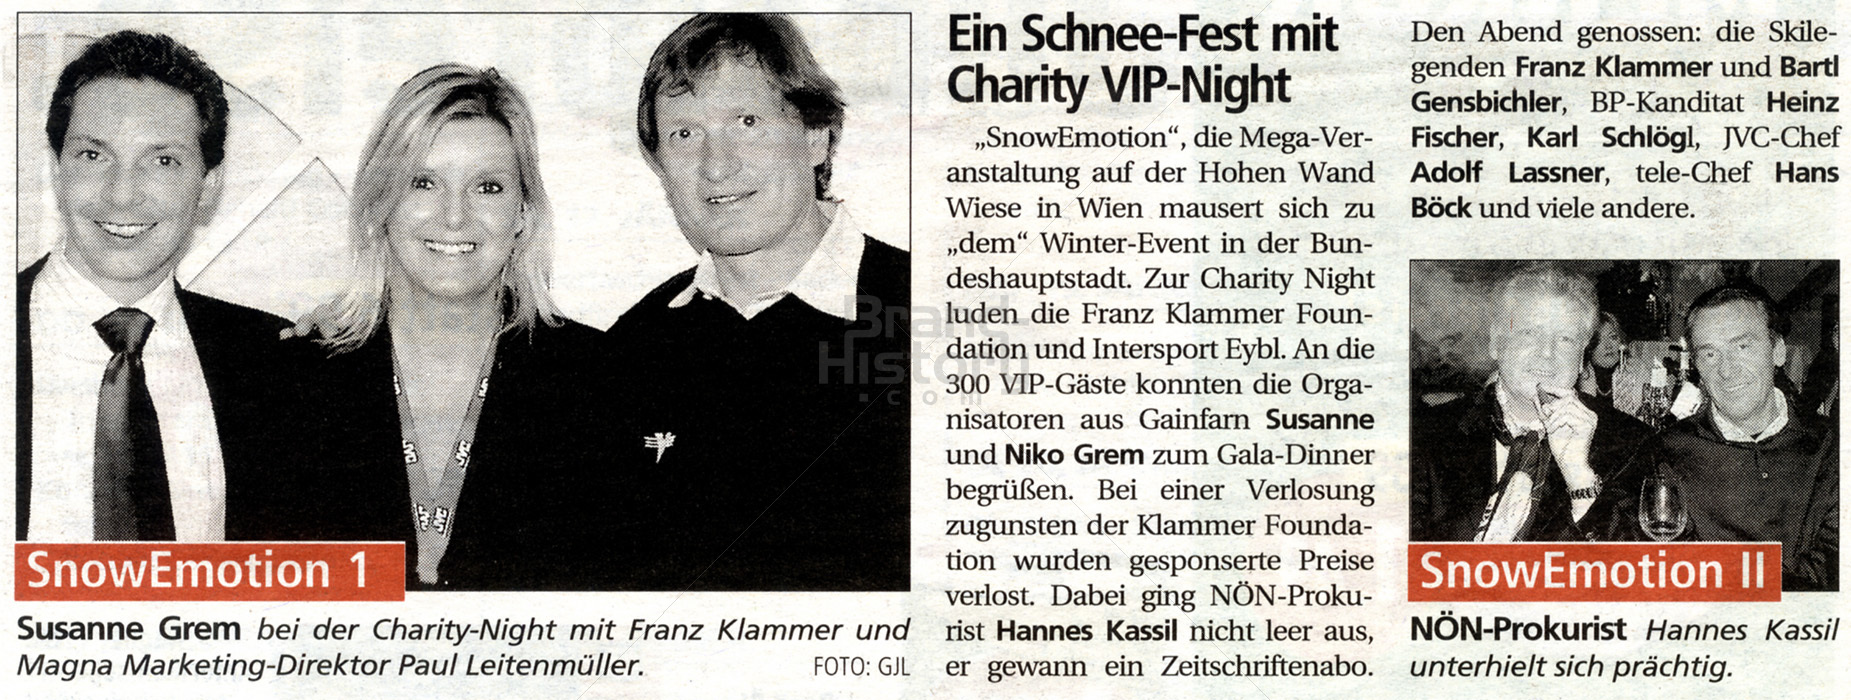 SUSANNE MODE & ACCESSOIRES · Ein Schnee-Fest mit Charity VIP-Night · SnowEmotion · (Sujet "Susanne Grem, Franz Klammer, Paul Leitenmüller, Hannes Kassil").